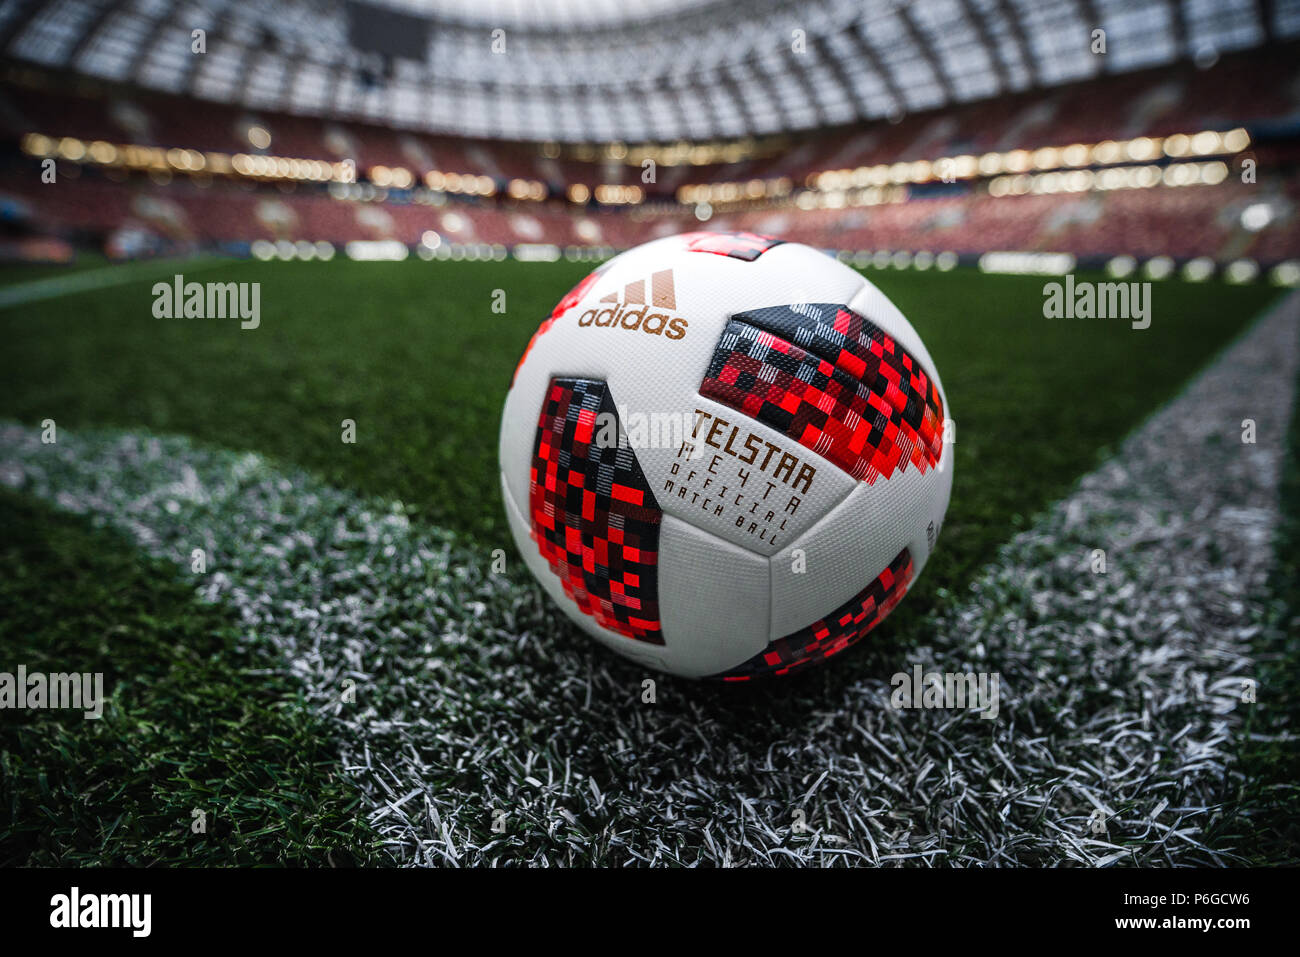 Foot : Adidas Telstar Chabet, ballon de match officiel des séries  éliminatoires de la Coupe du Monde de la FIFA, Russie 2018 sur le terrain  au stade Luzhniki, Moscou, Russie Photo Stock - Alamy